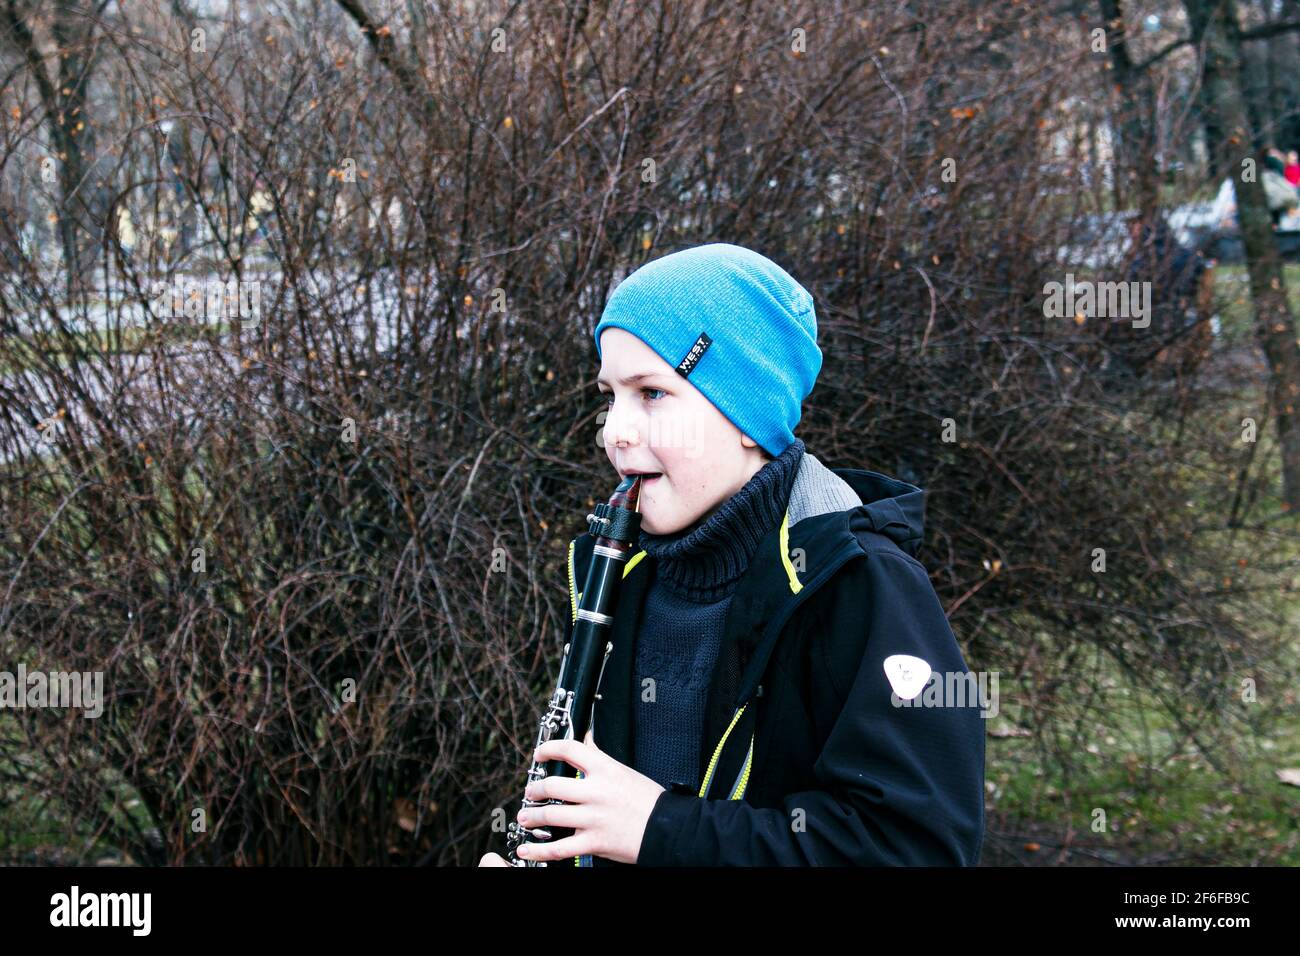 Dnepropetrovsk, Ucraina - 03.29.2021: Un ragazzo nel parco suona il clarinetto. Il bambino è di buon umore. Foto Stock